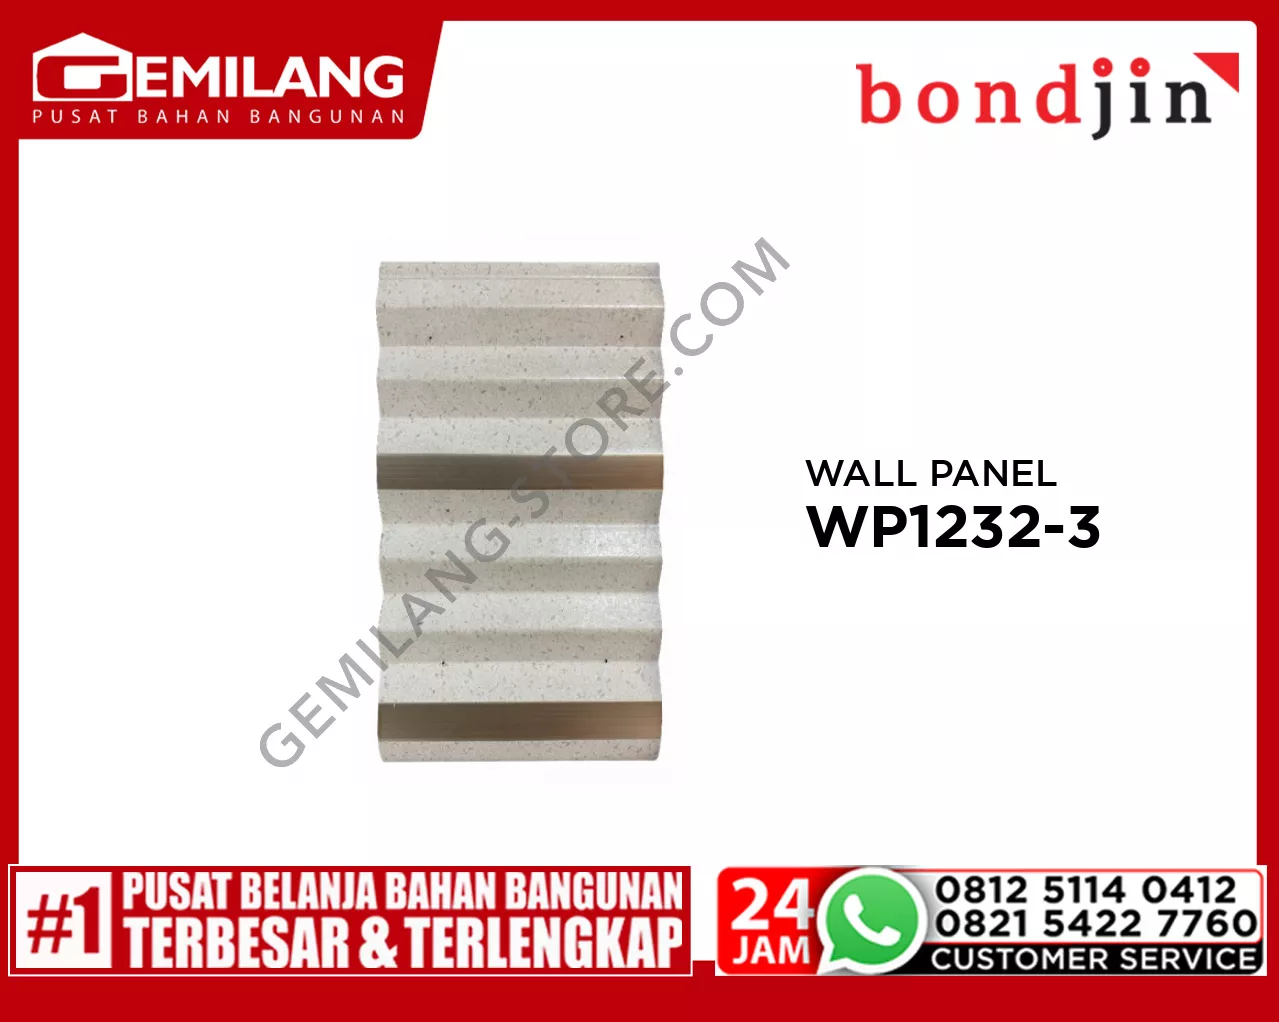 BONDJIN WALL PANEL WP1232-3 (195 x 3000 x 12T)